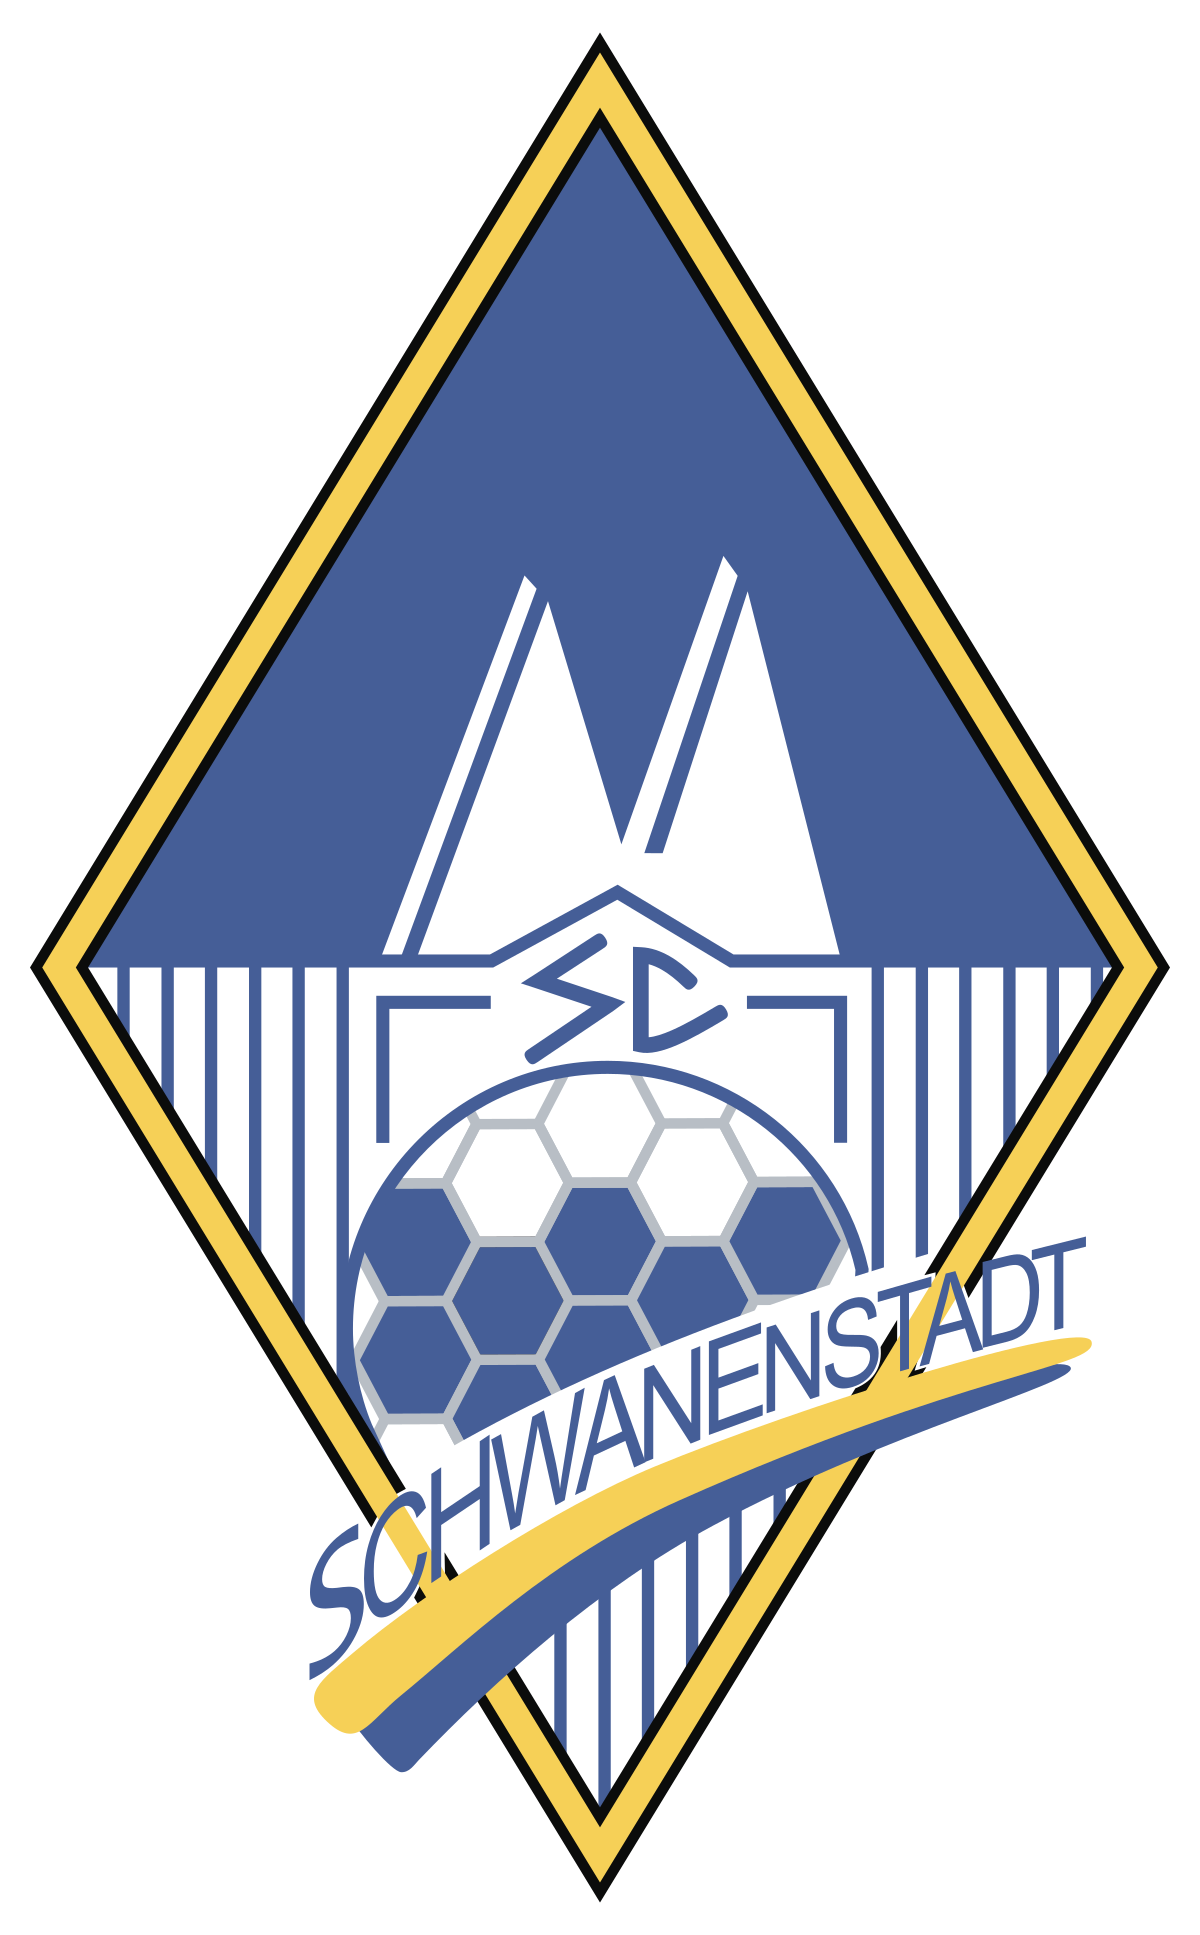 Schwanenstadt logo